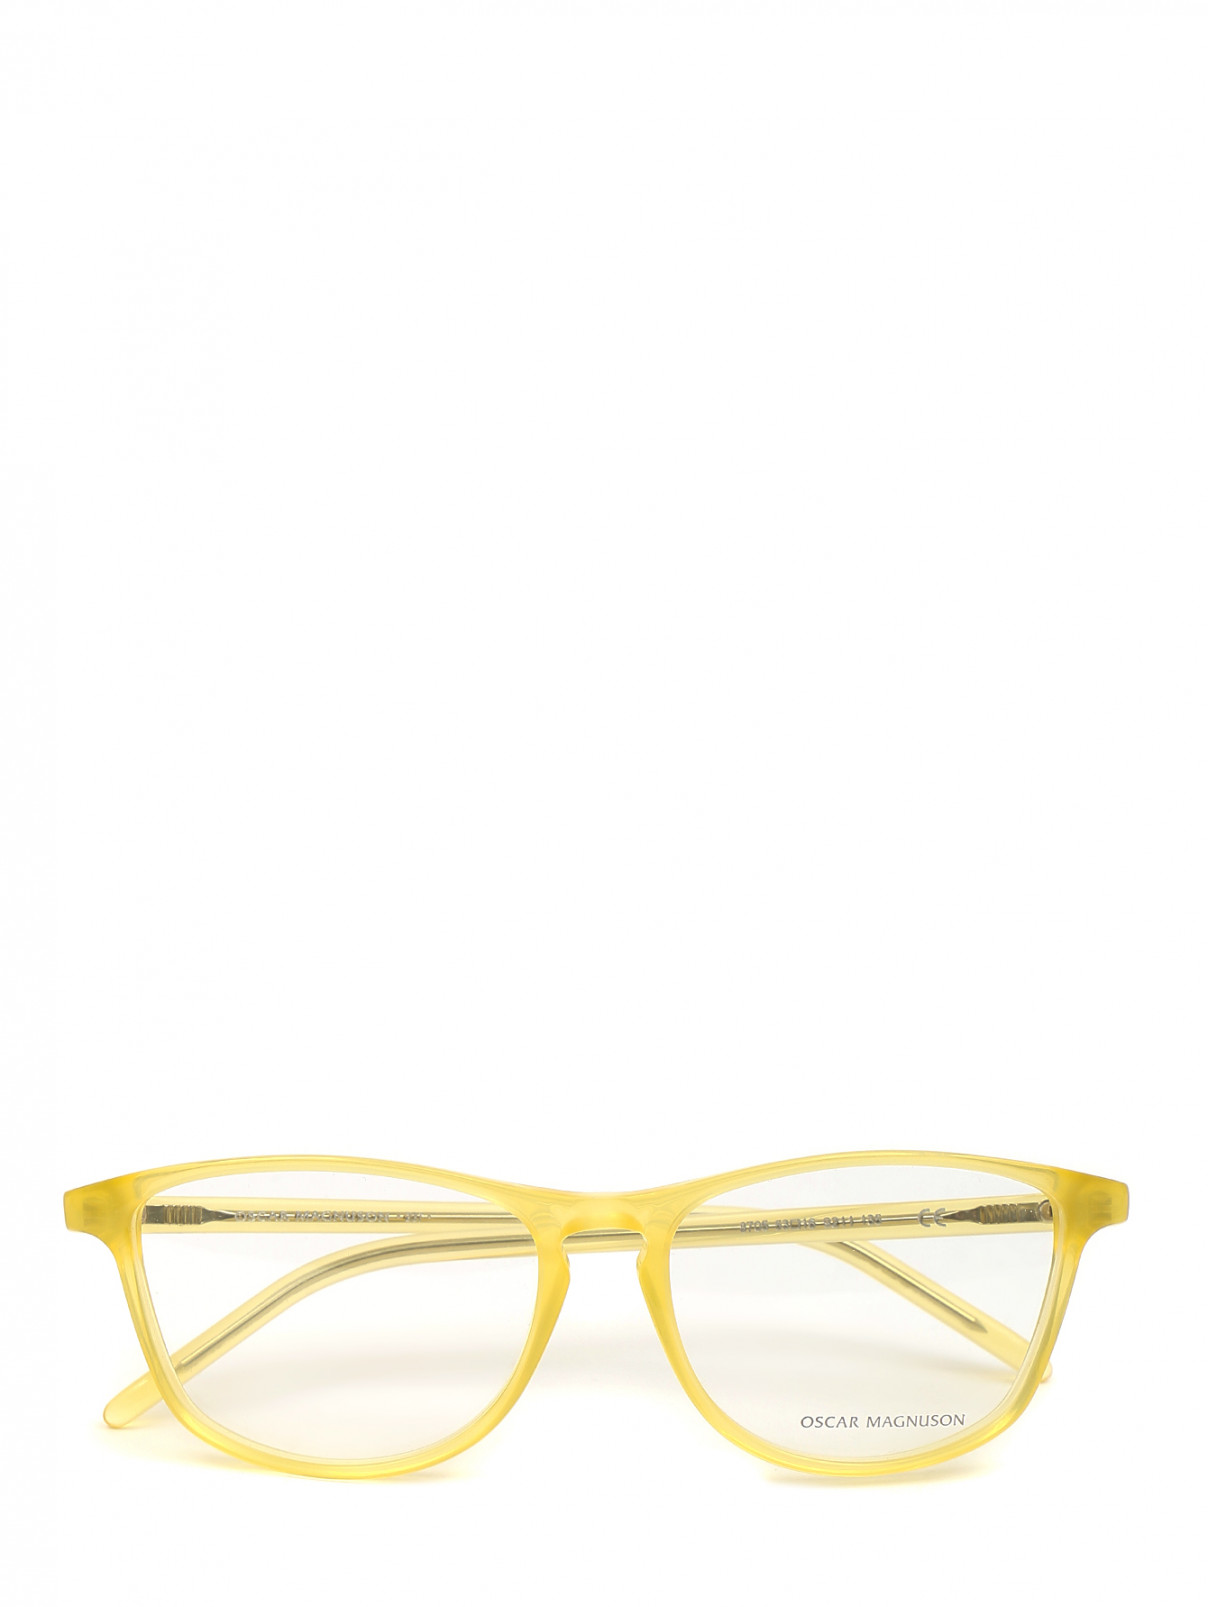 Оправа с прозрачными стеклами Oscar Magnuson  –  Общий вид  – Цвет:  Желтый